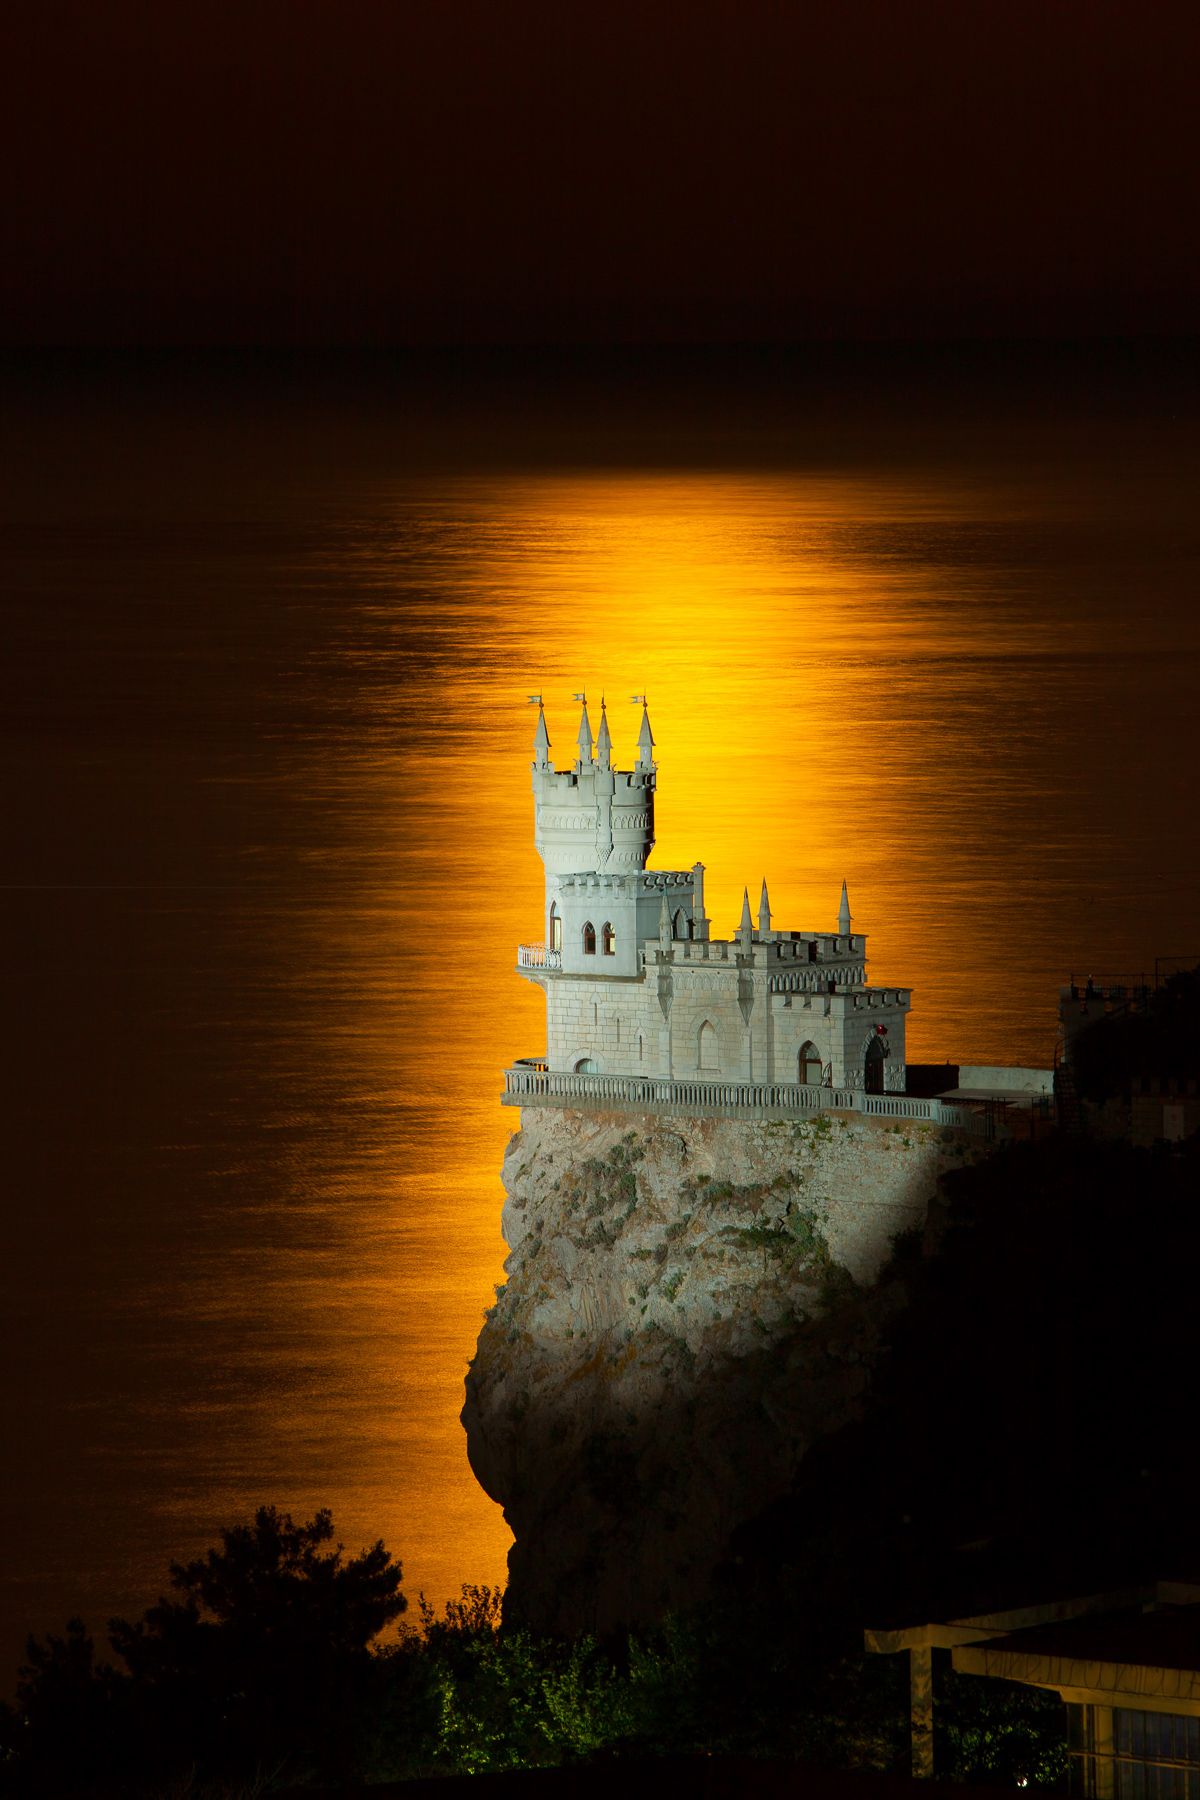 мыс ай-тодор, ласточкино гнездо, черное море, лунная дорожка, замок ласточкино гнездо, фотограф ялта, Serge Titov